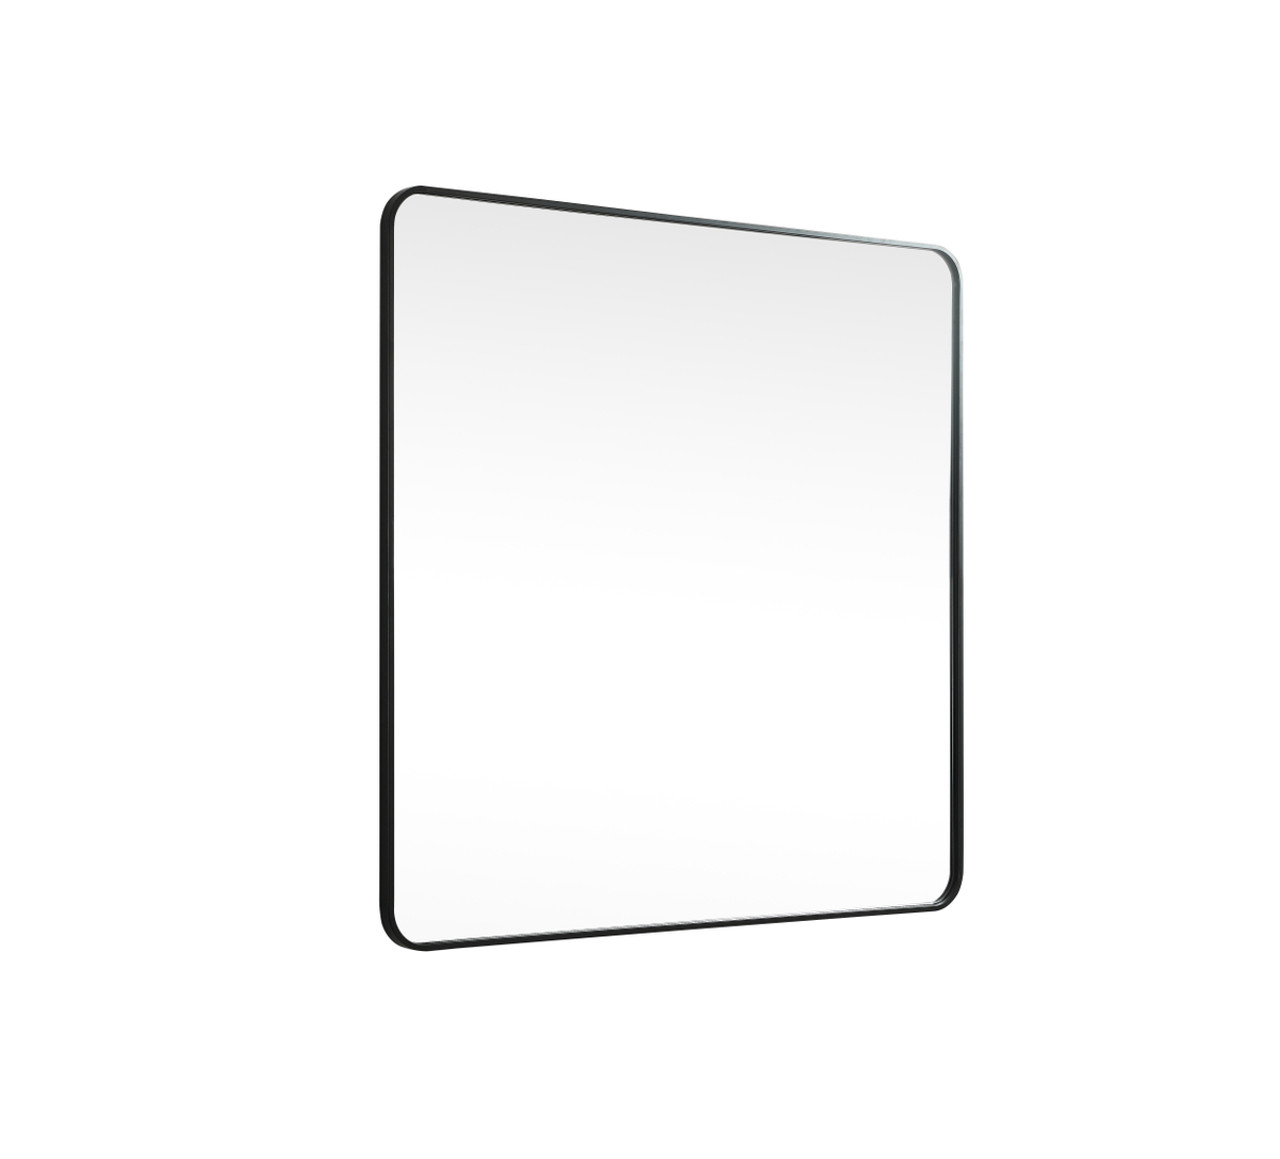 Elegant Decor MR804242BK Soft corner metal square mirror 42x42 inch in Black